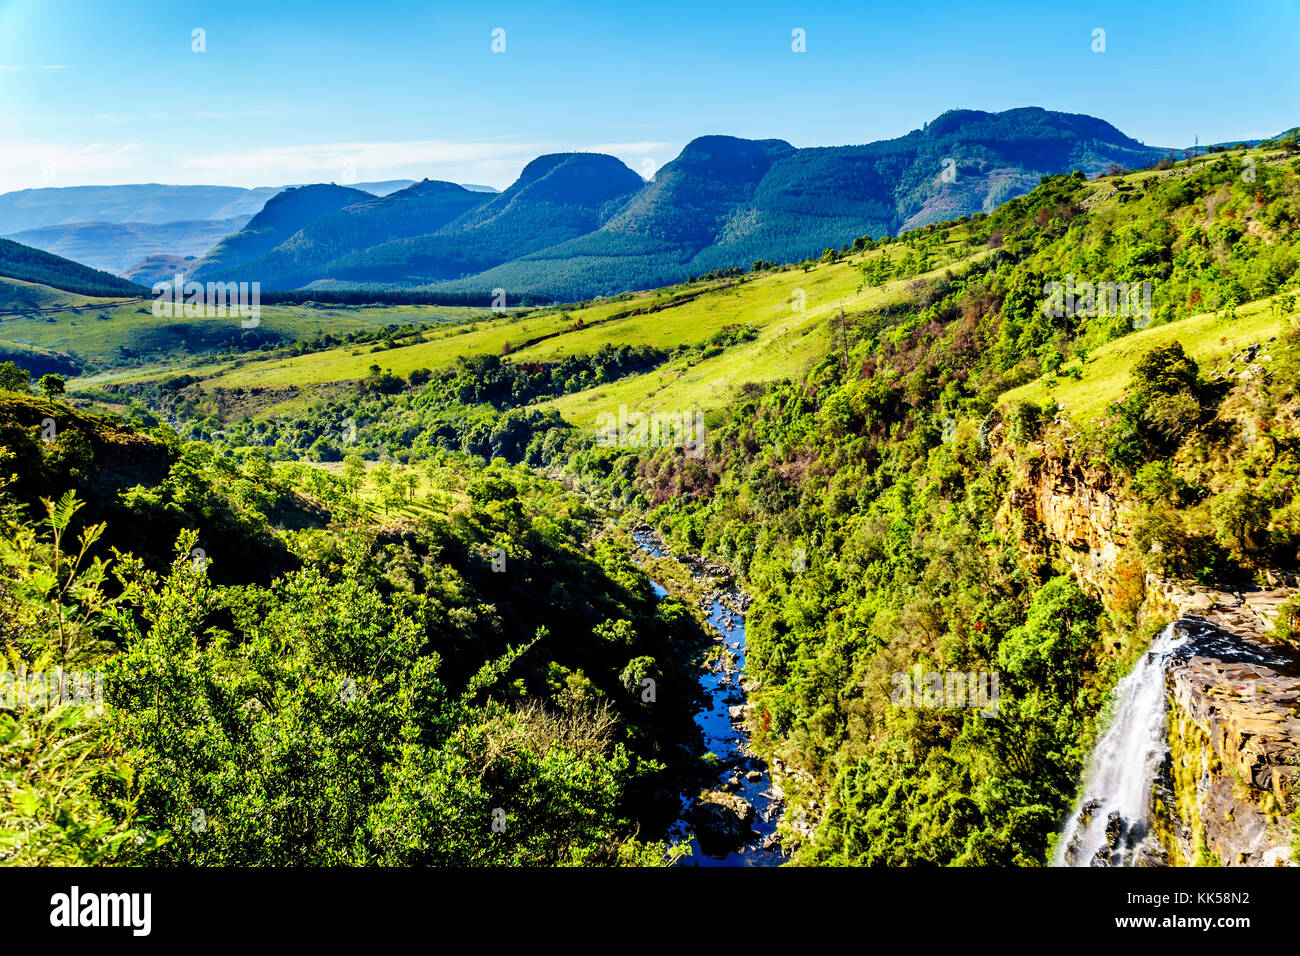 Lissabon fällt in der Nähe von Gottes Fenster auf der Panorama-Route in der Provinz Mpumalanga im Norden Südafrikas Stockfoto